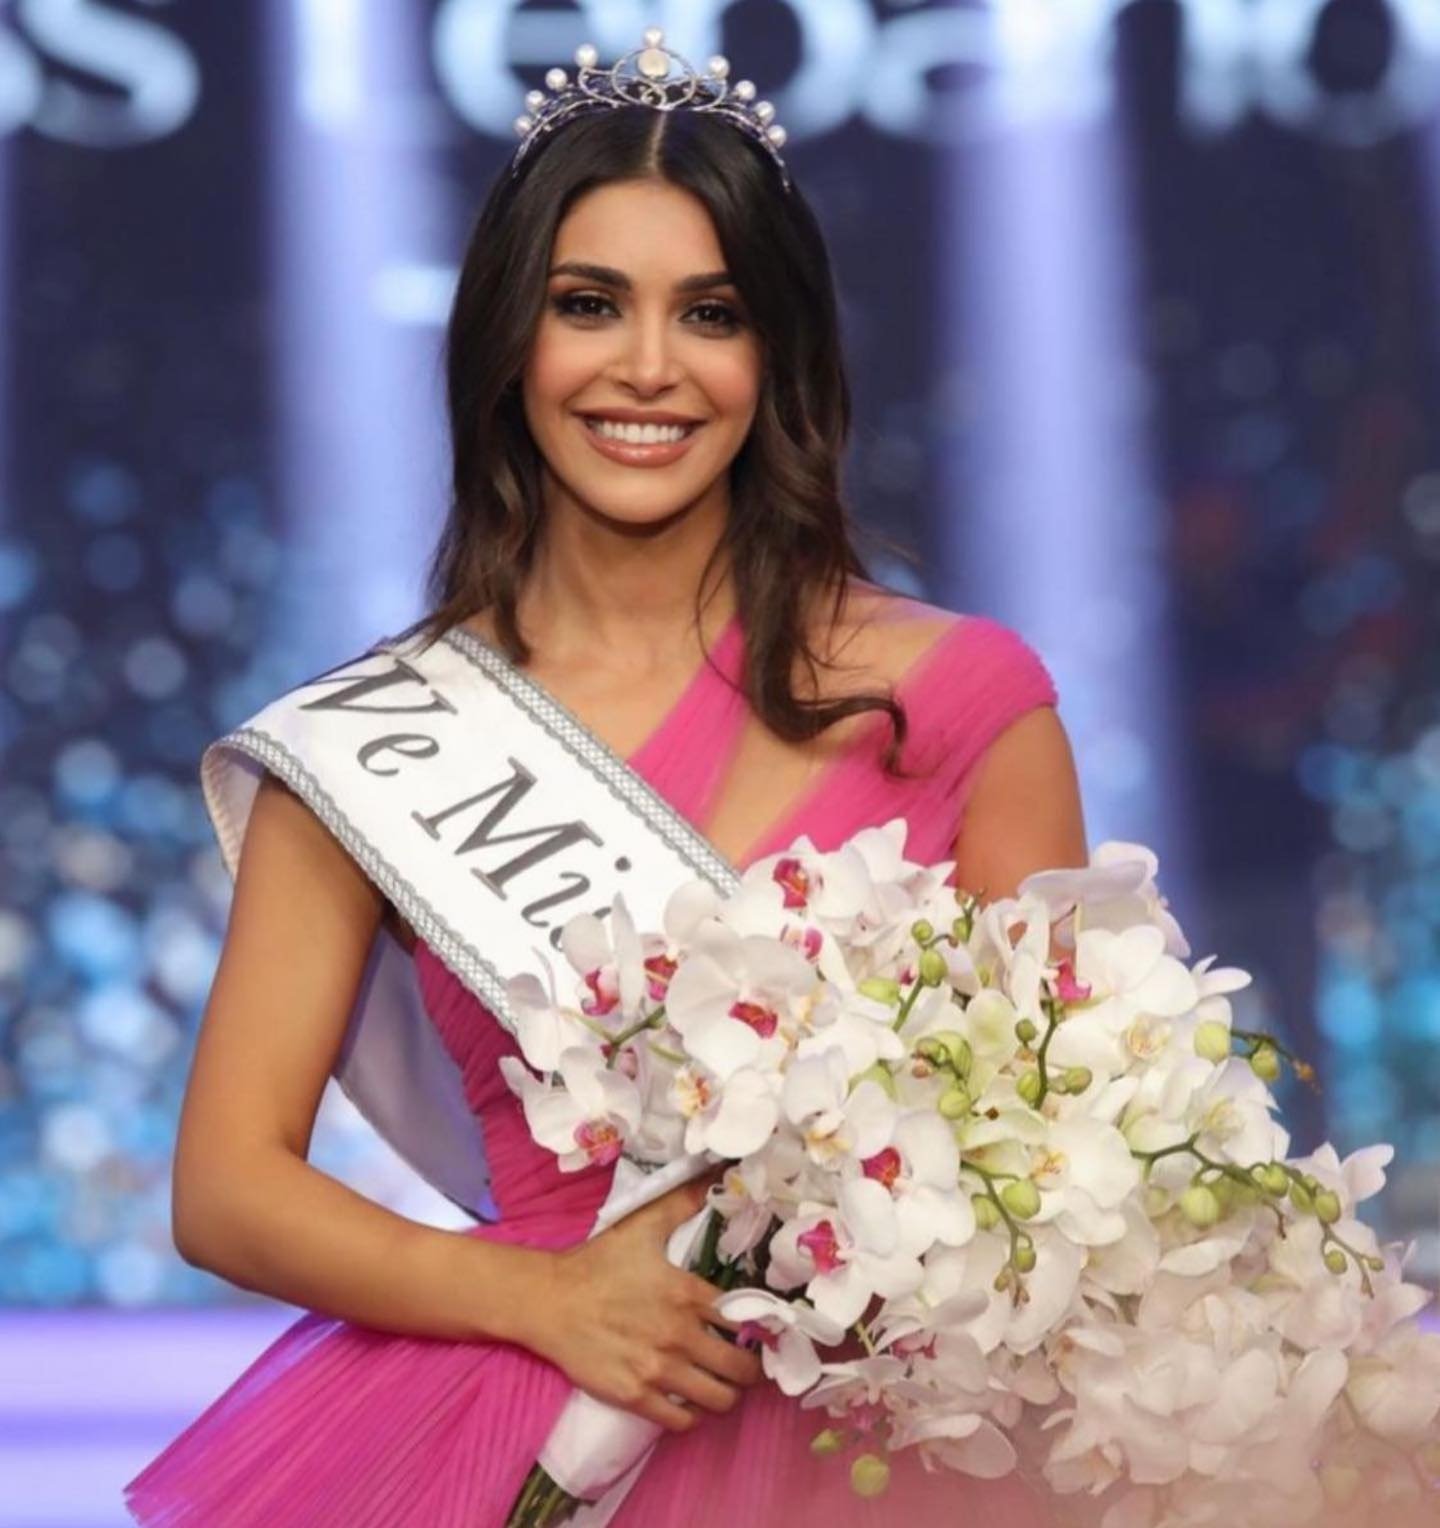 ياسمينا زيتون ملكة جمال لبنان 2022